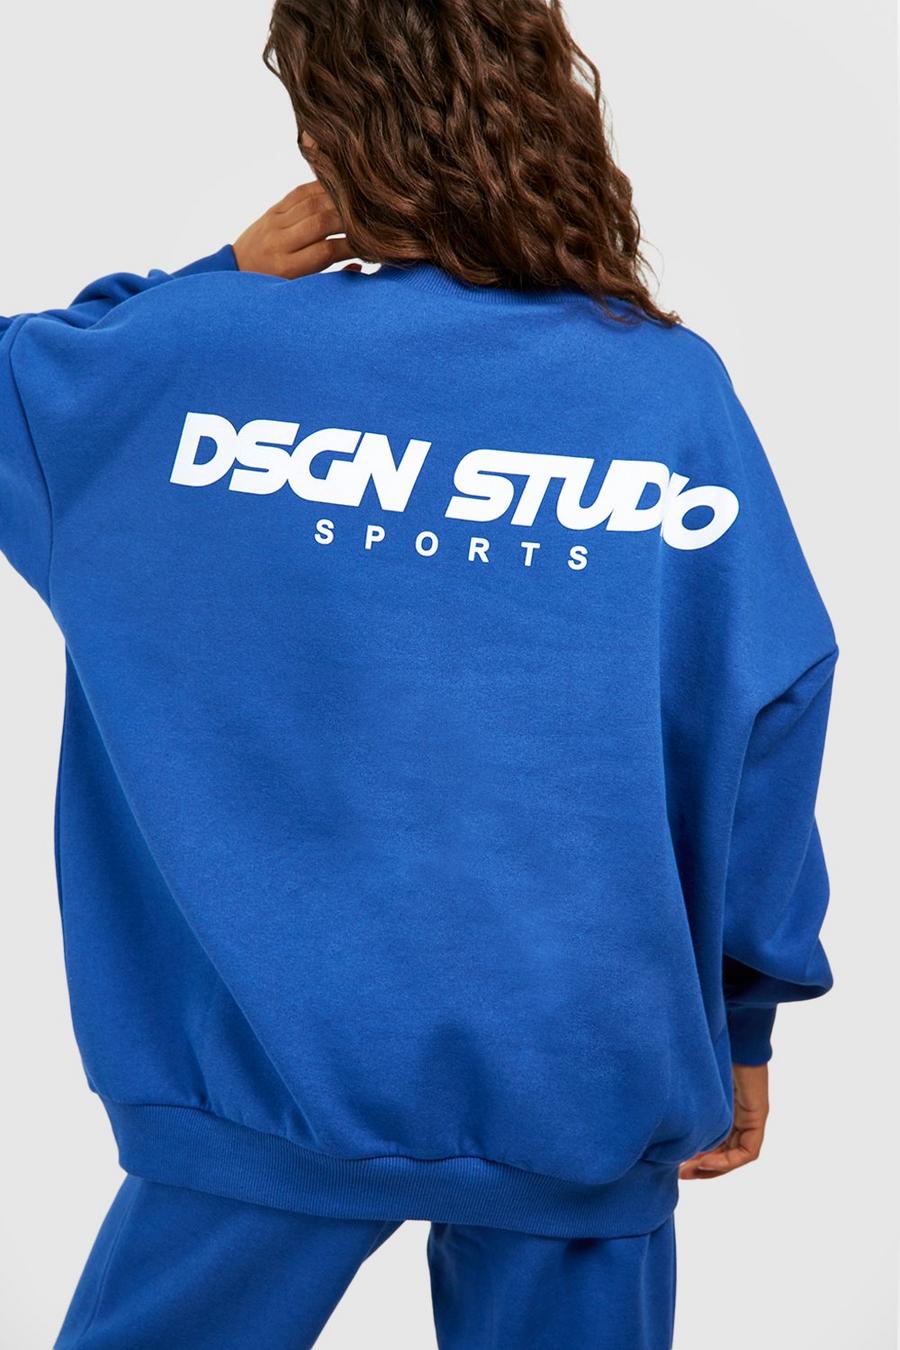 Cobalt Dsgn Studio Sports Oversized Sweatshirt